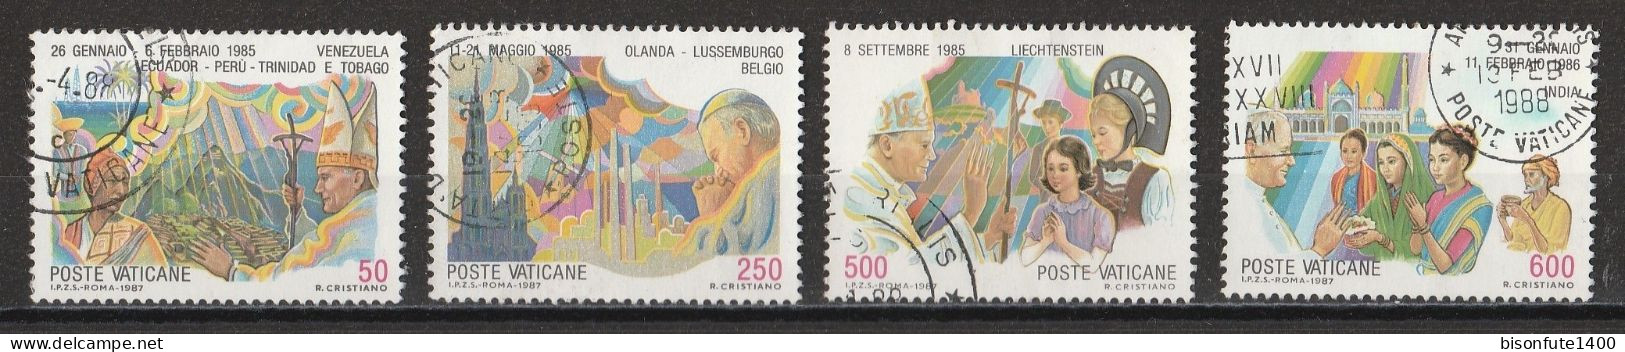 Vatican 1987 : Timbres Yvert & Tellier N° 817 - 818 - 820 - 821 - 822 - 823 Et 824 Oblitérés. - Oblitérés